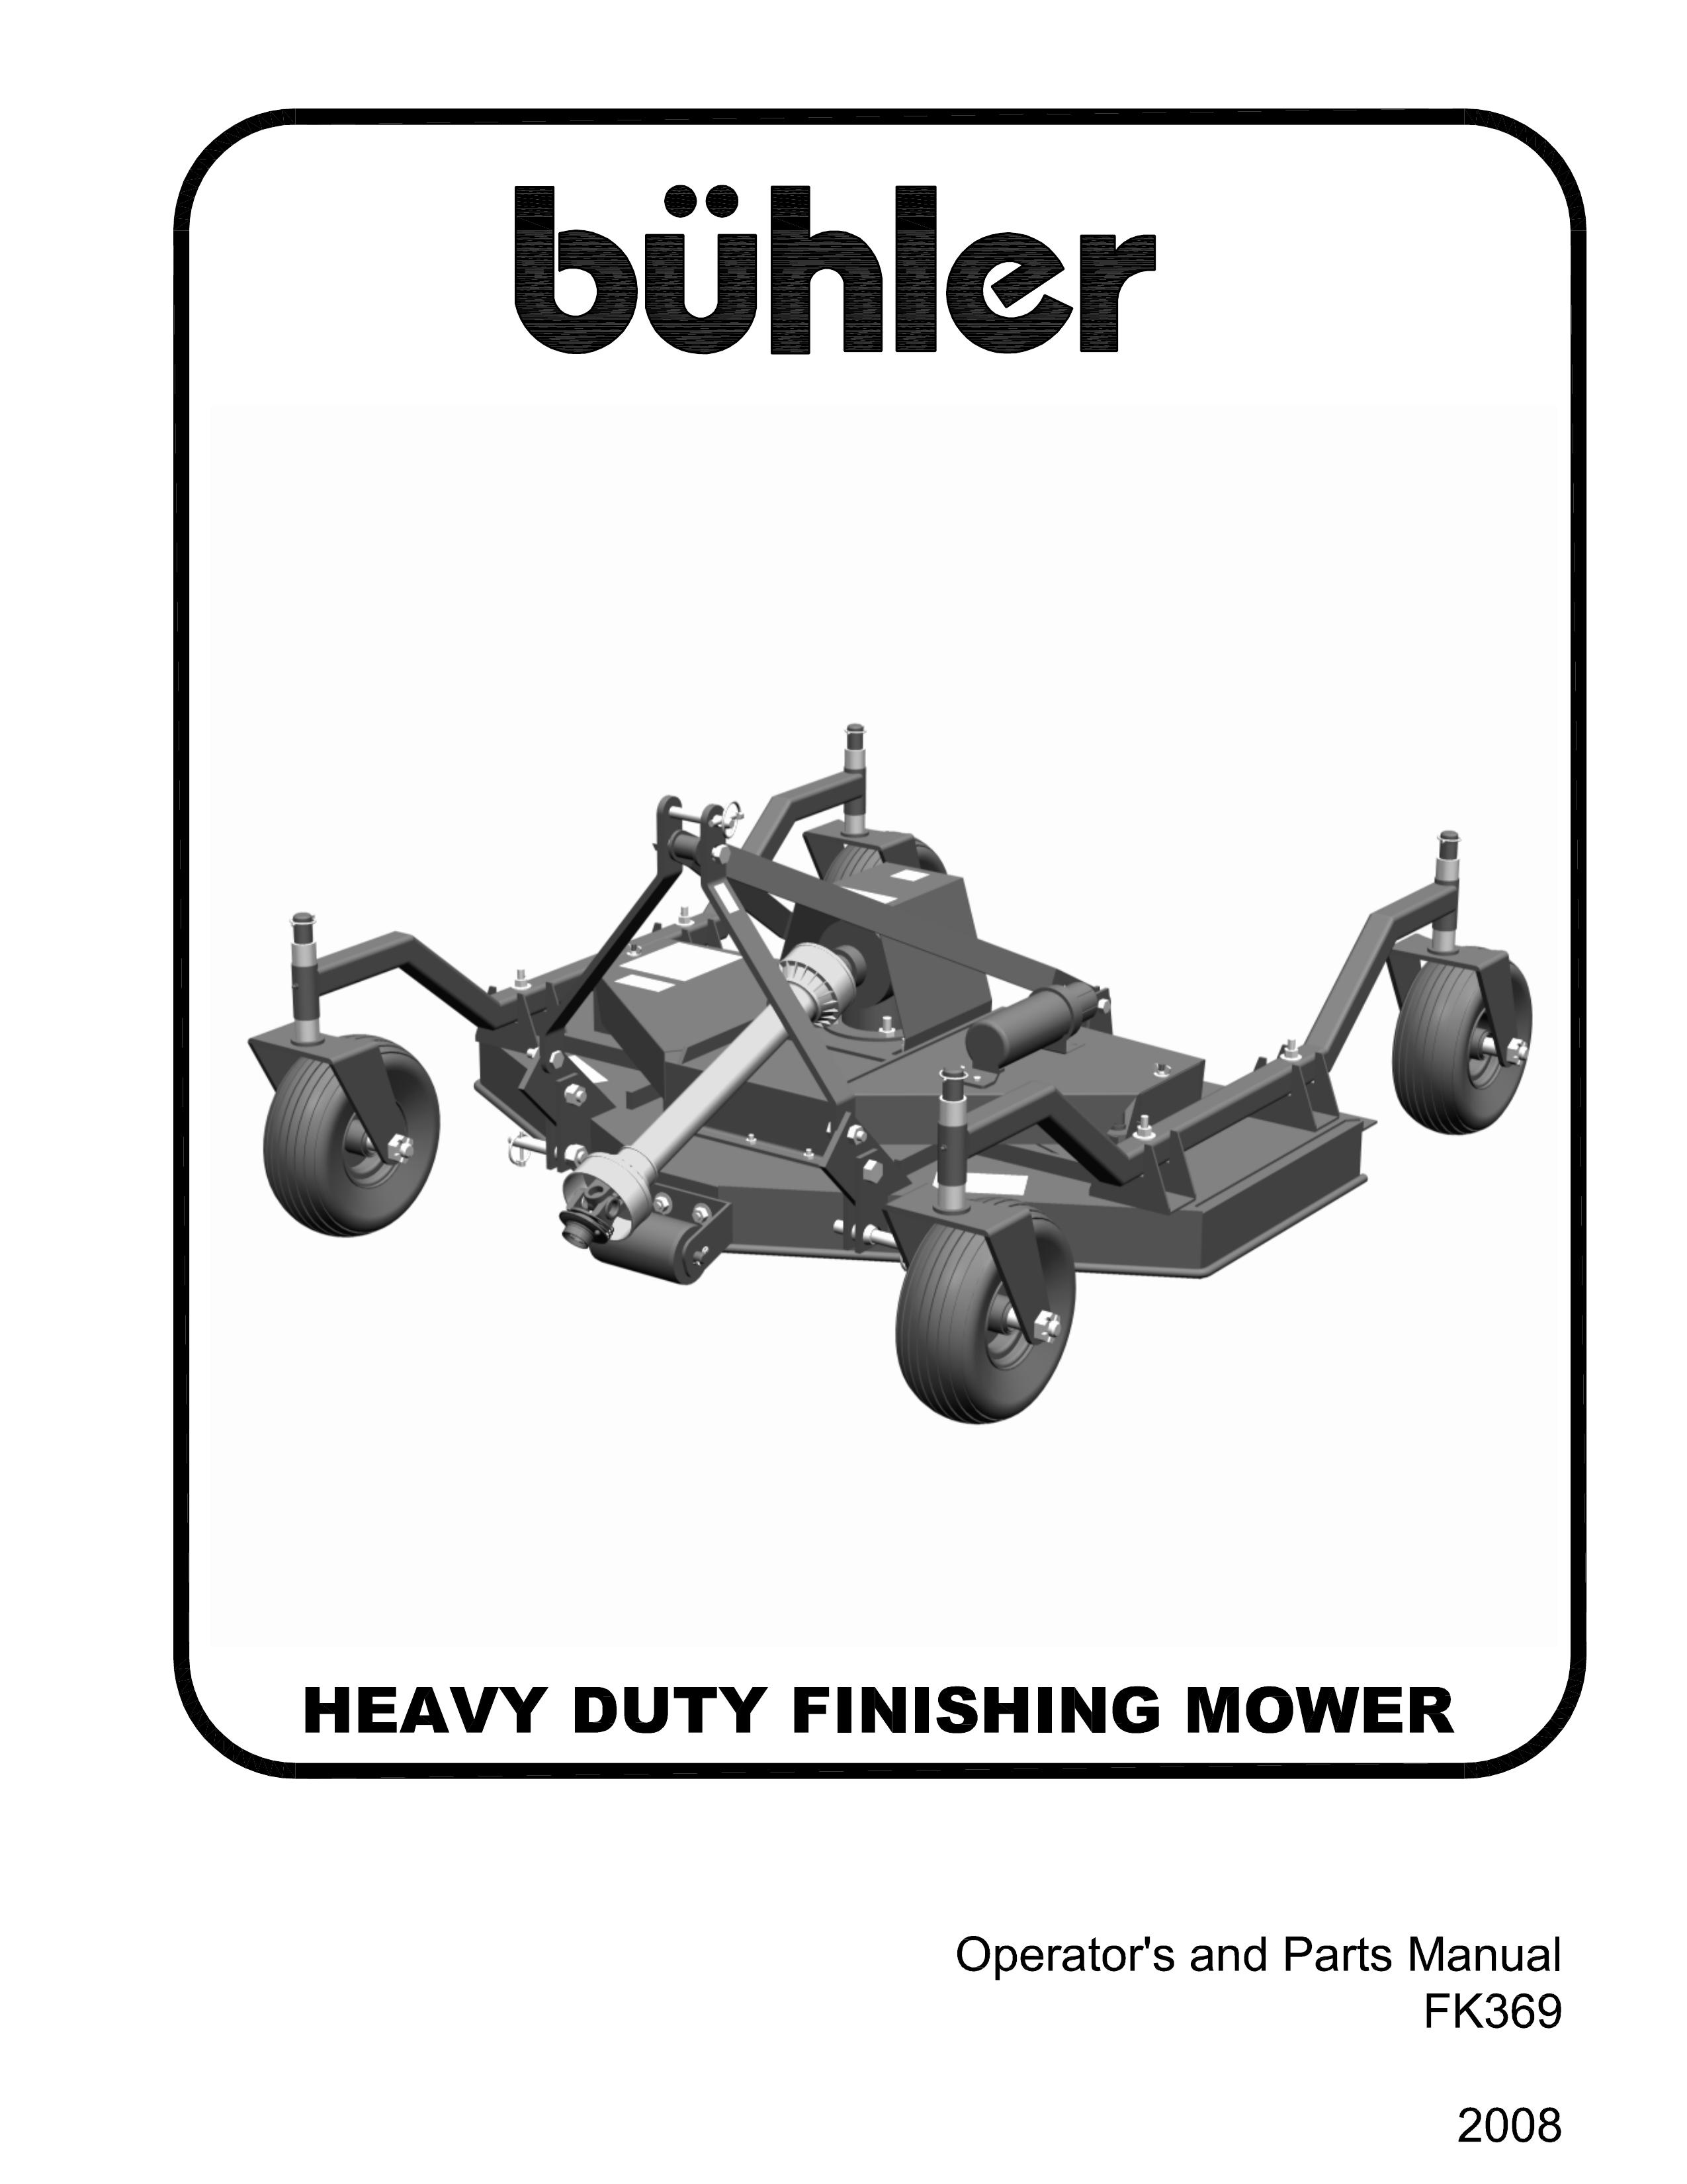 Buhler FK369 Lawn Mower User Manual